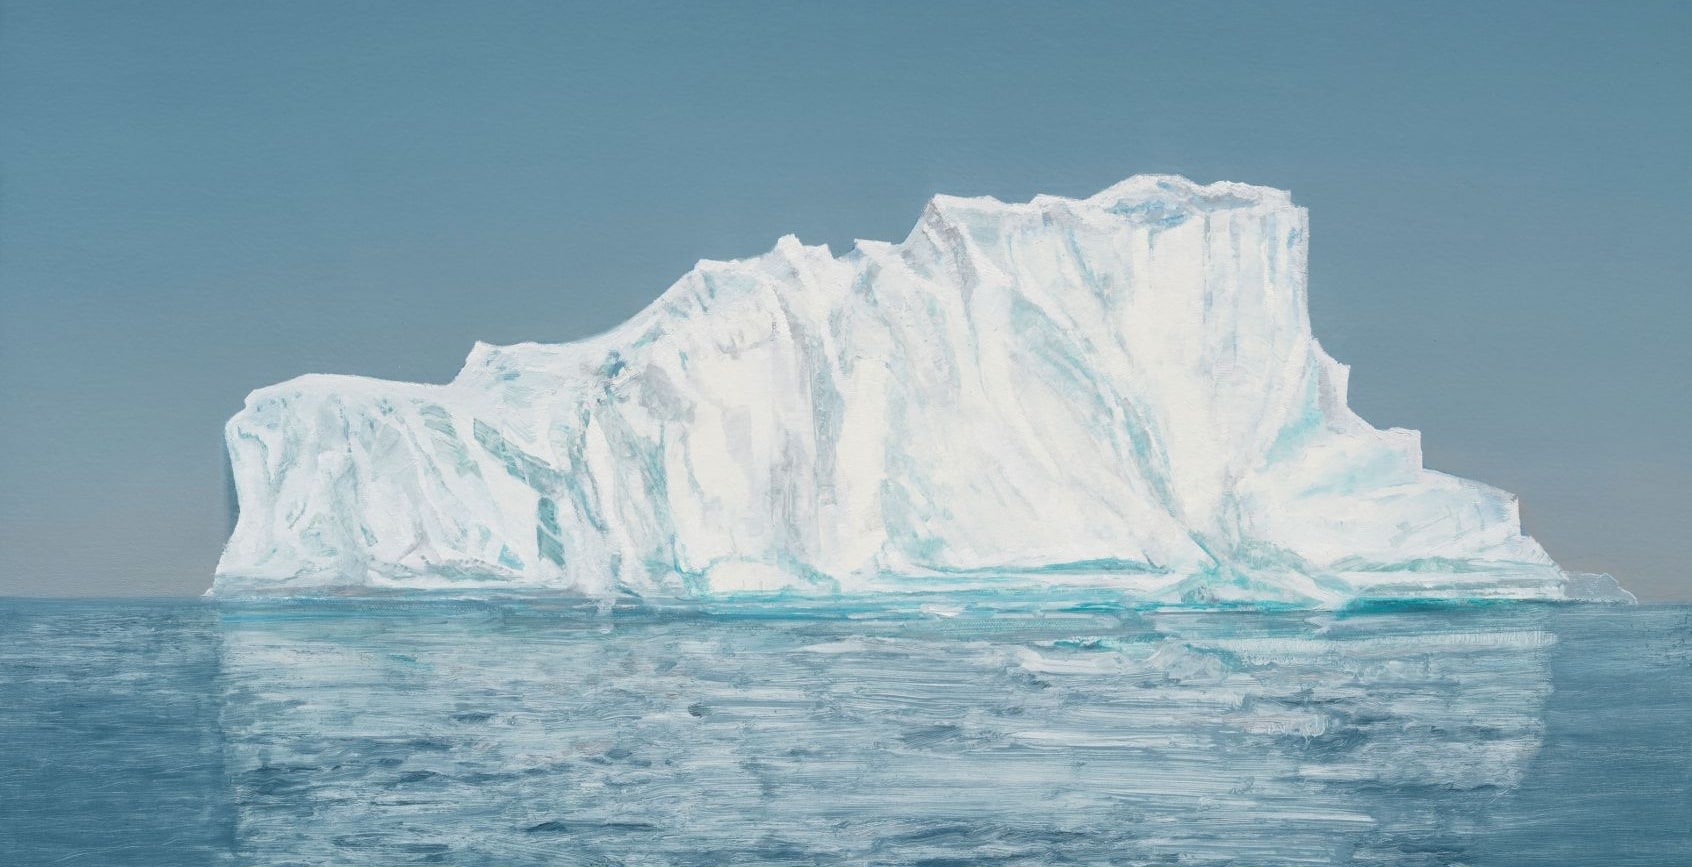 &amp;nbsp;

Iceberg #1 (Disko Bay, 69.2667&amp;deg; N, 52.0447 7&amp;deg; W Greenland, 22 July 2019, 9:15 PM),&amp;nbsp;2021